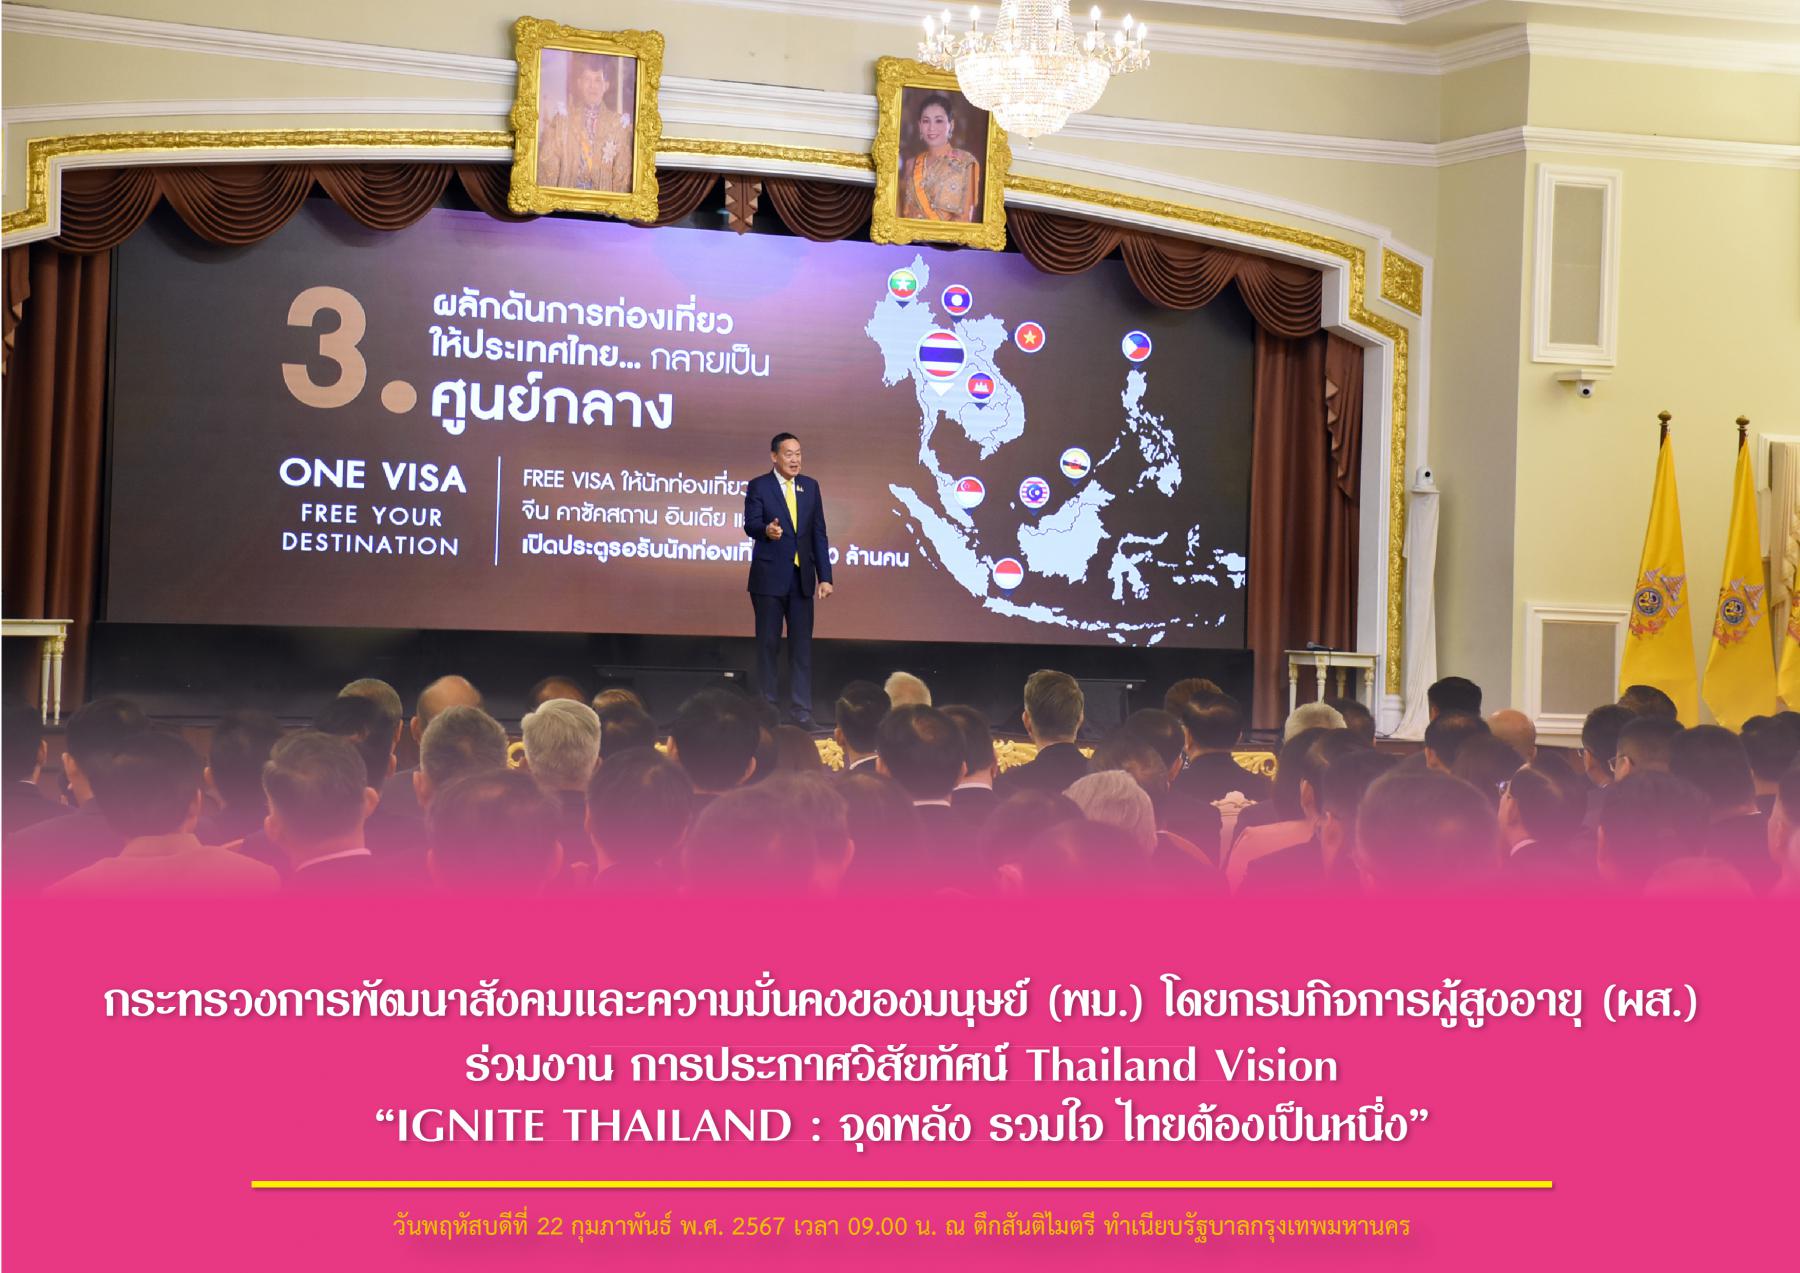 กระทรวงการพัฒนาสังคมและความมั่นคงของมนุษย์ (พม.) โดยกรมกิจการผู้สูงอายุ (ผส.) ร่วมงาน การประกาศวิสัยทัศน์ Thailand Vision “IGNITE THAILAND : จุดพลัง รวมใจ ไทยต้องเป็นหนึ่ง”